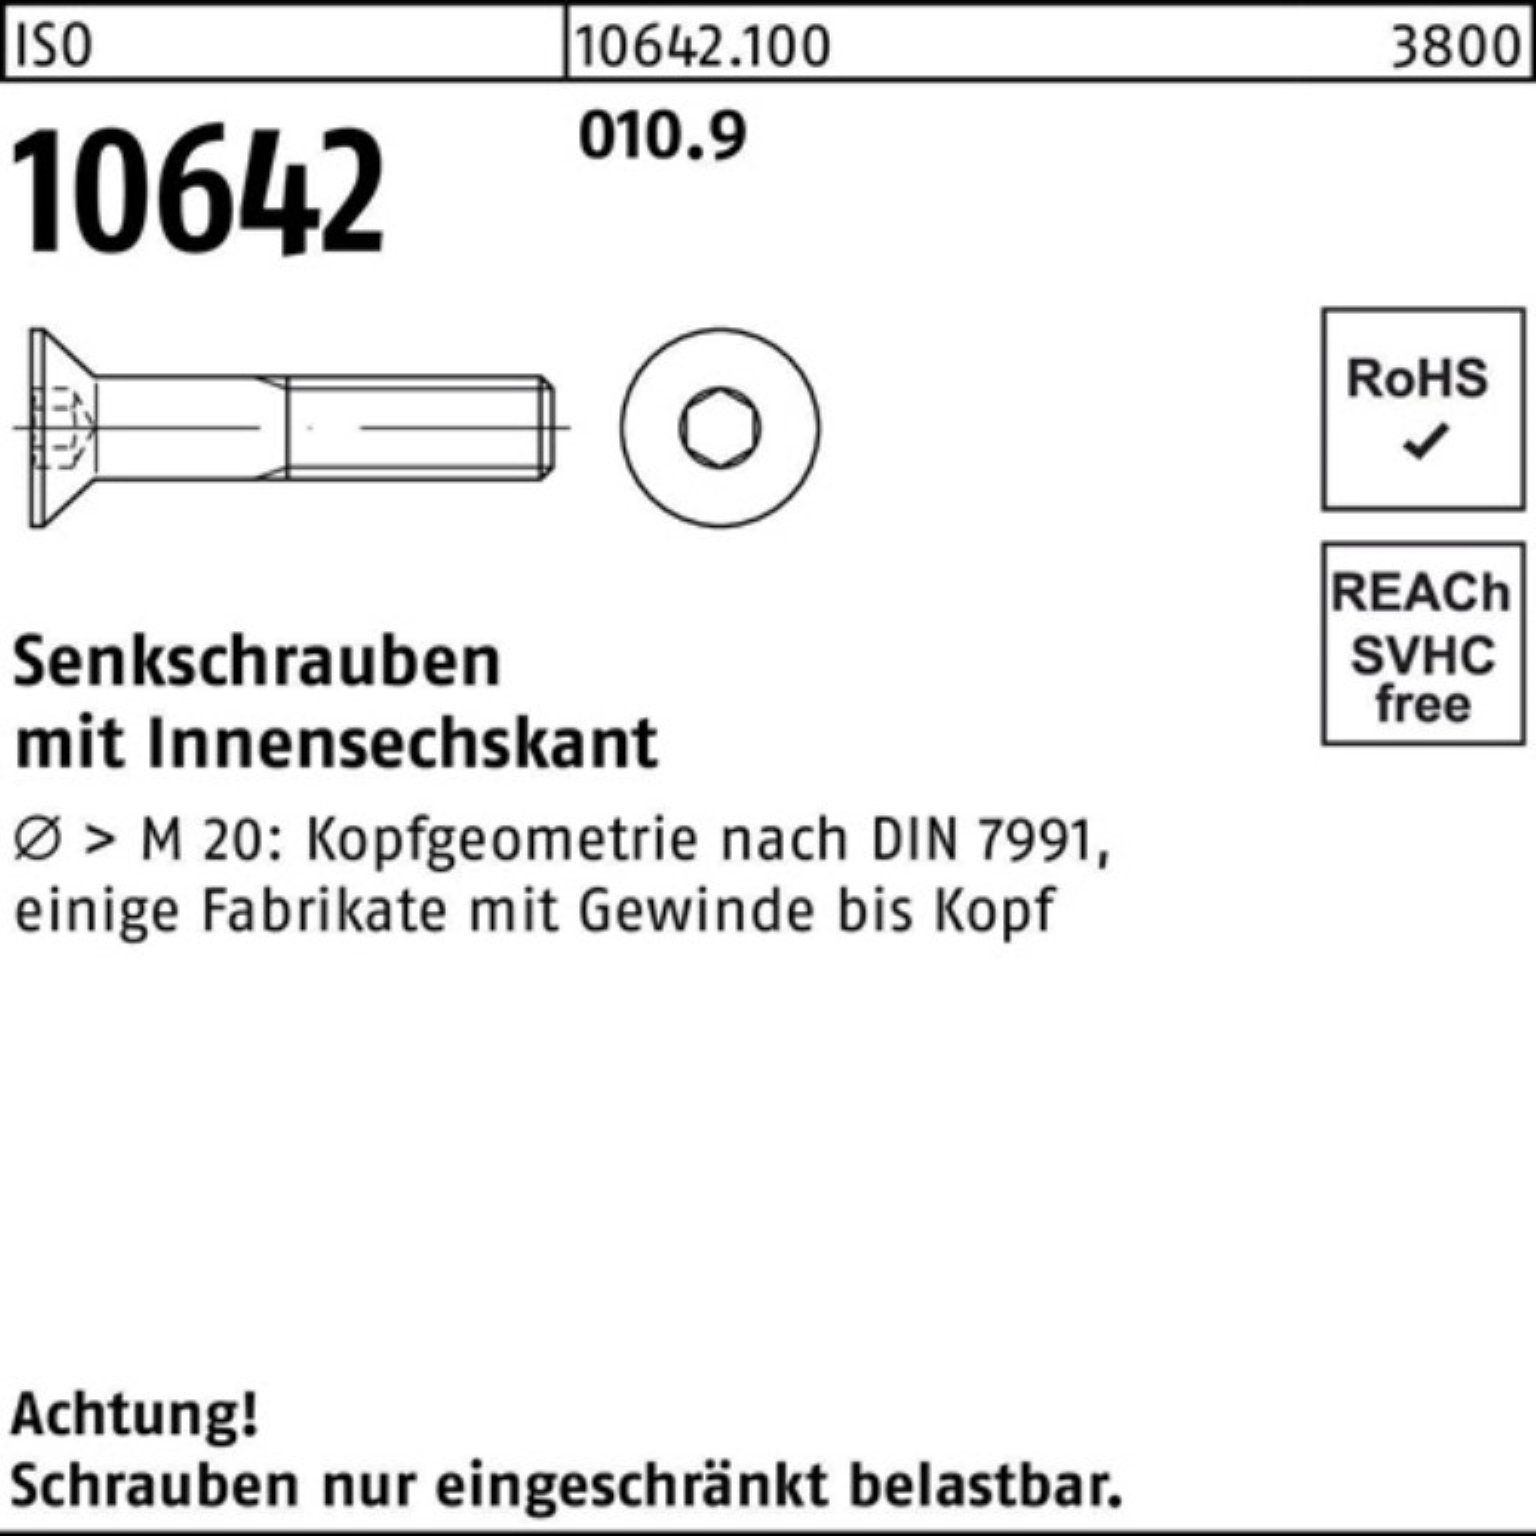 Reyher Senkschraube 500er Pack IS ISO Senkschraube 14 M4x 500 Stück Innen-6kt 10642 010.9